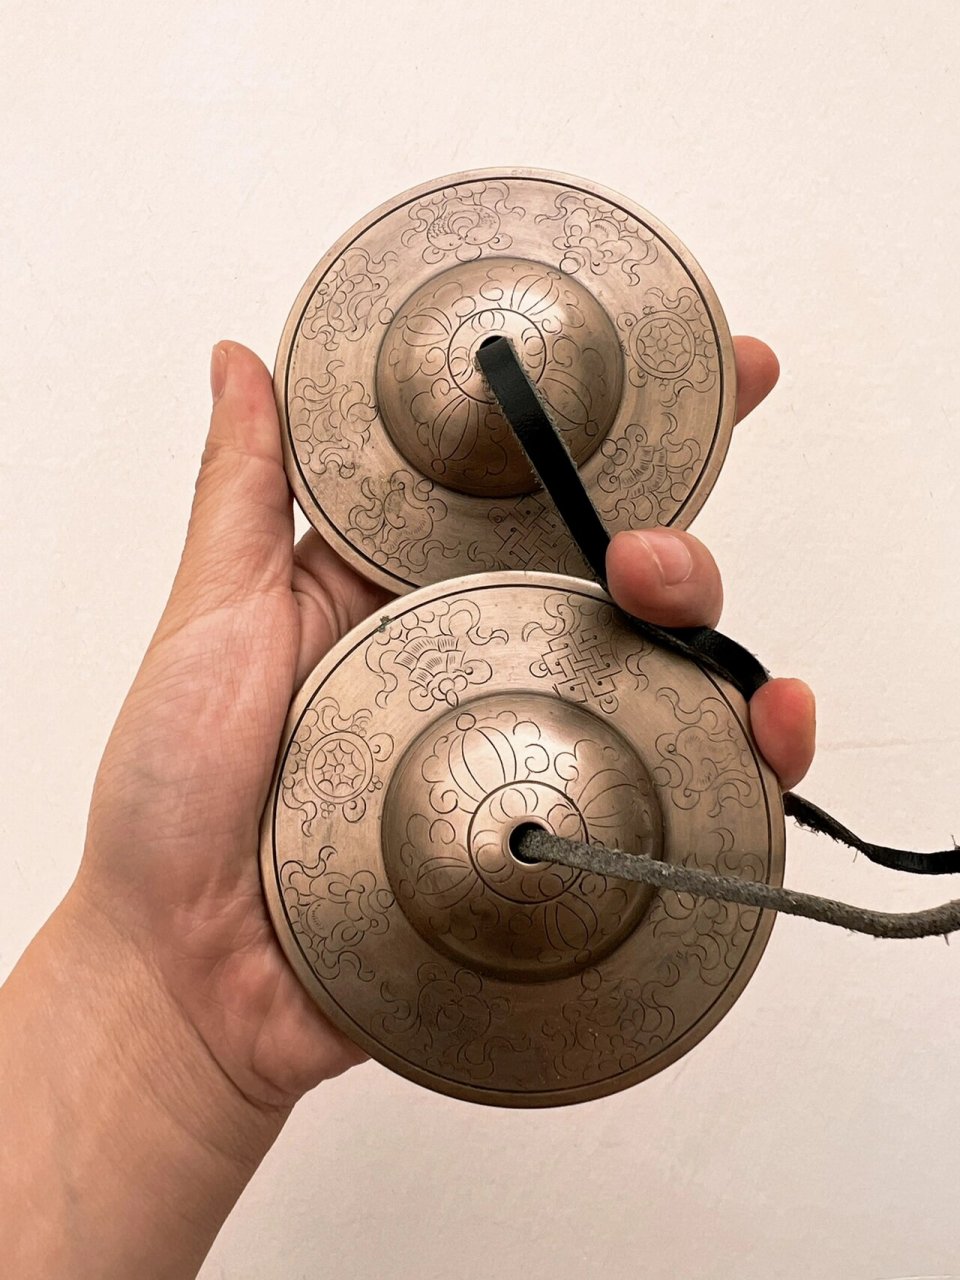 如何正确使用碰铃才能发出悦耳的疗愈之声?